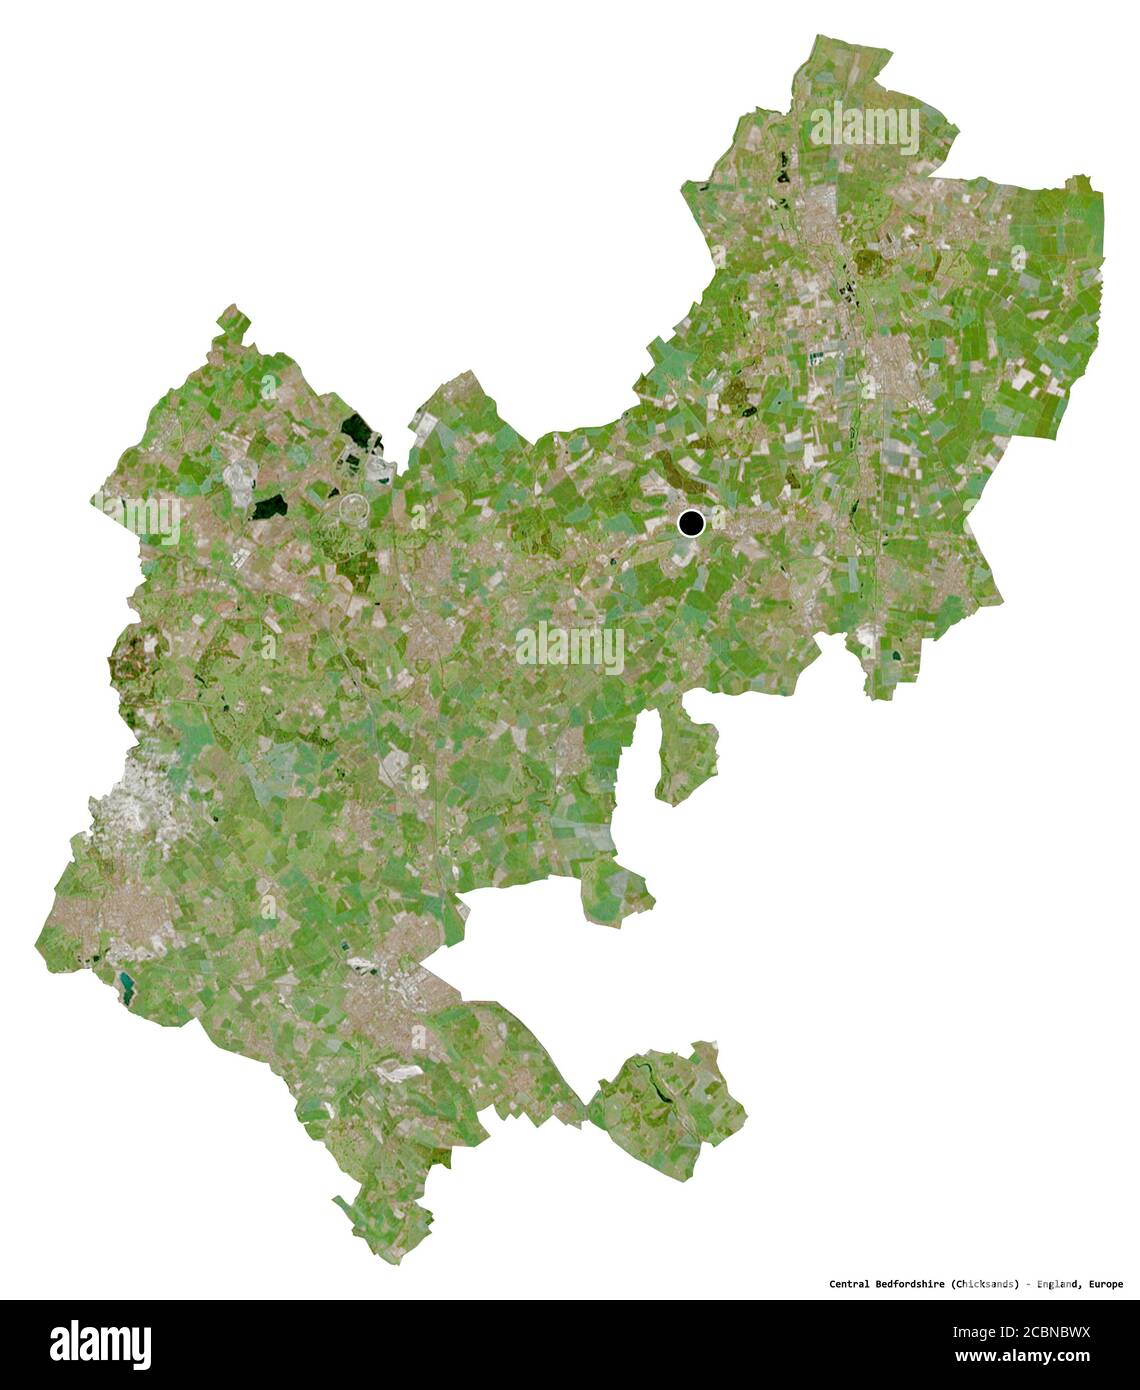 Forme du Bedfordshire central, comté administratif de l'Angleterre, avec sa capitale isolée sur fond blanc. Imagerie satellite. Rendu 3D Banque D'Images